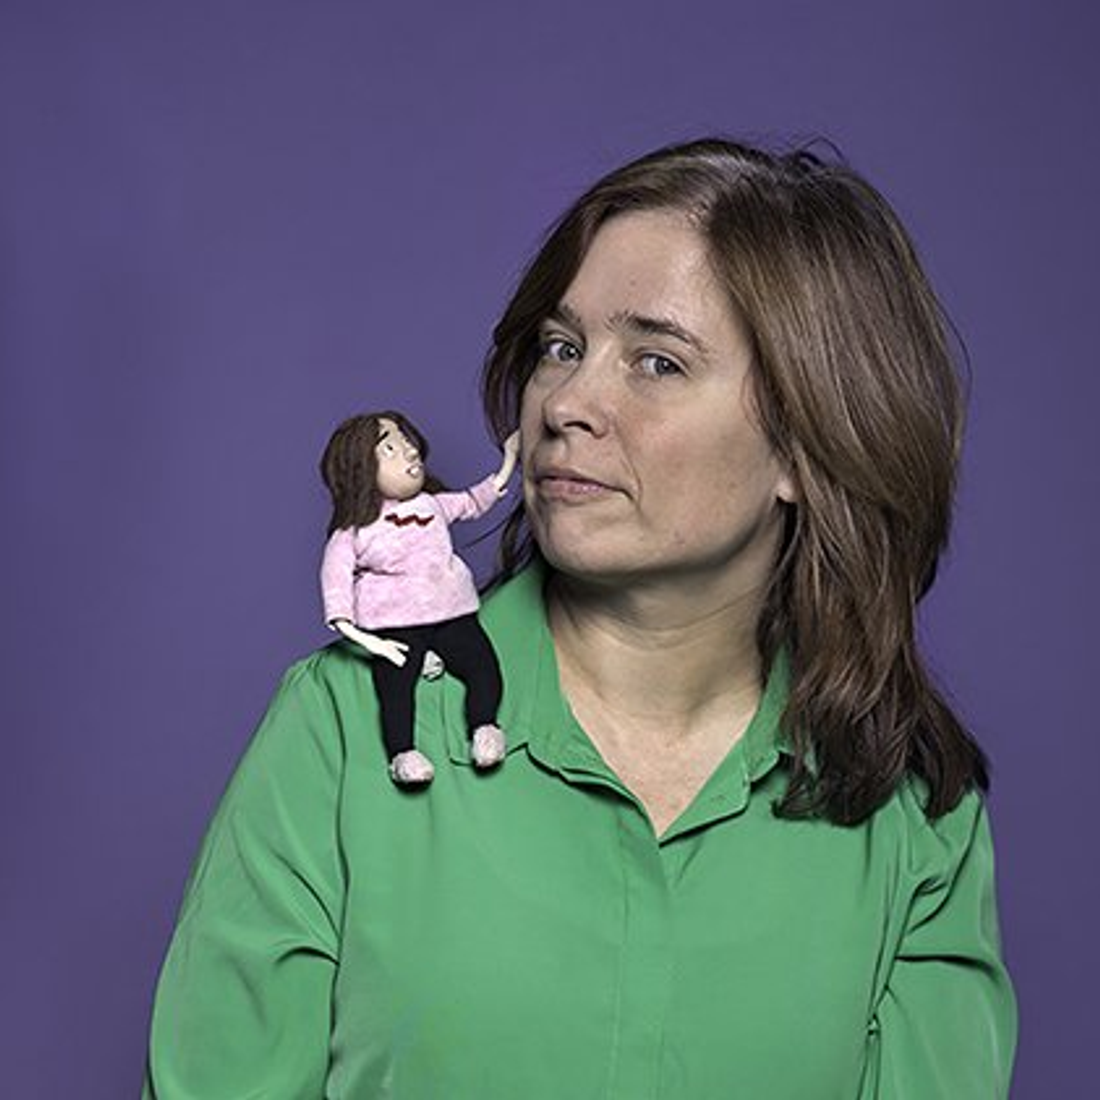 Portretfoto van Mascha Halberstad, met een kleine pop op haar schouder